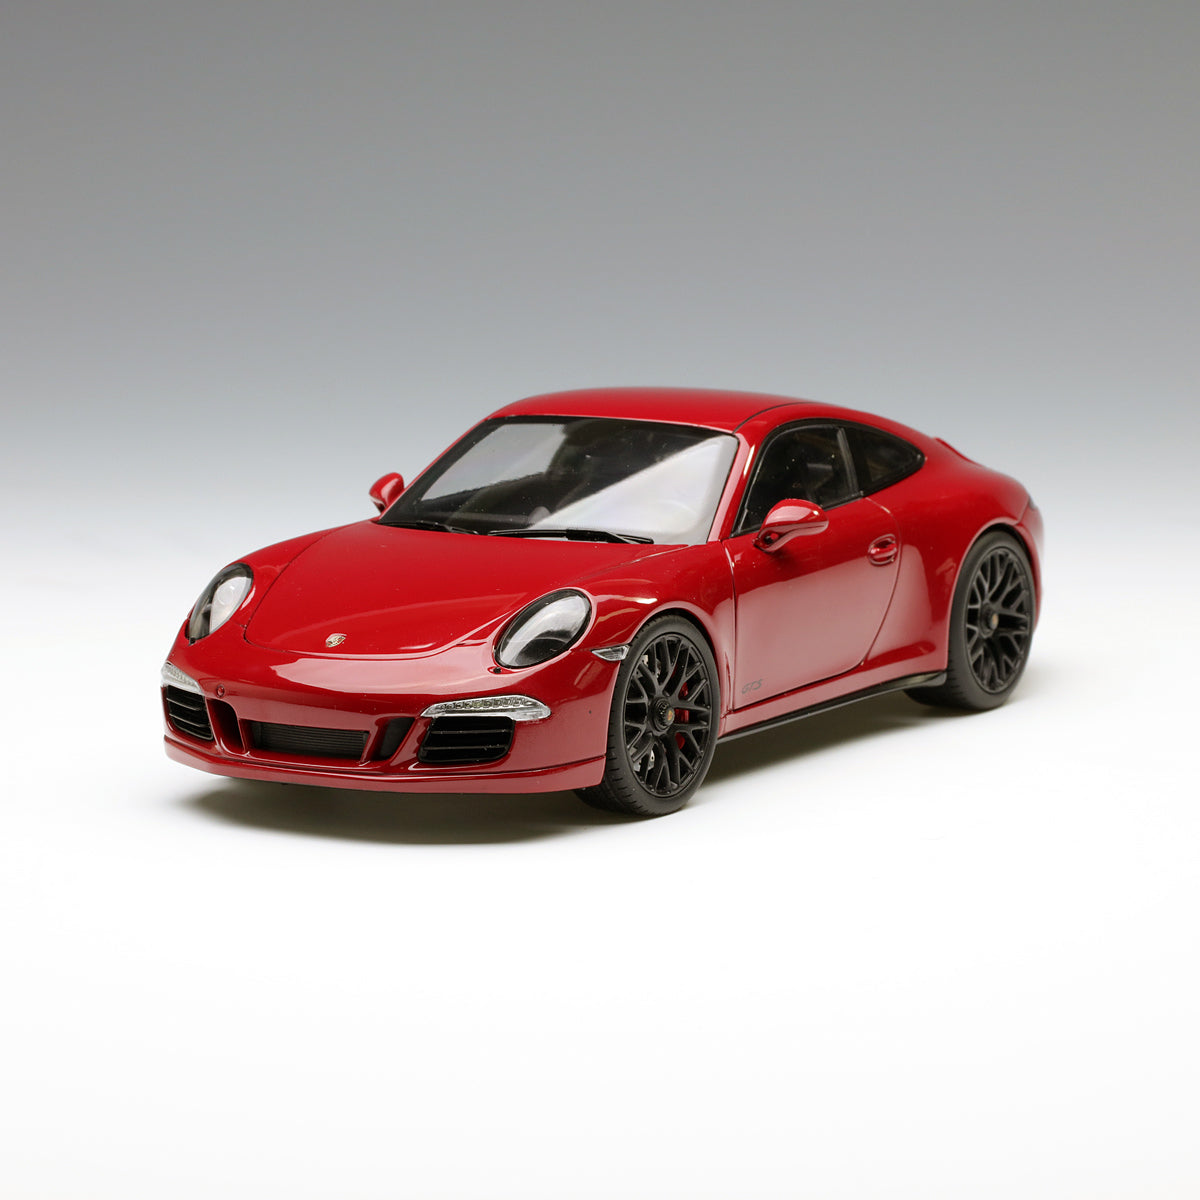 Schuco 1:18 Porsche 911 Carrera GTS Coupe Red 450039000 – YomaCarModel